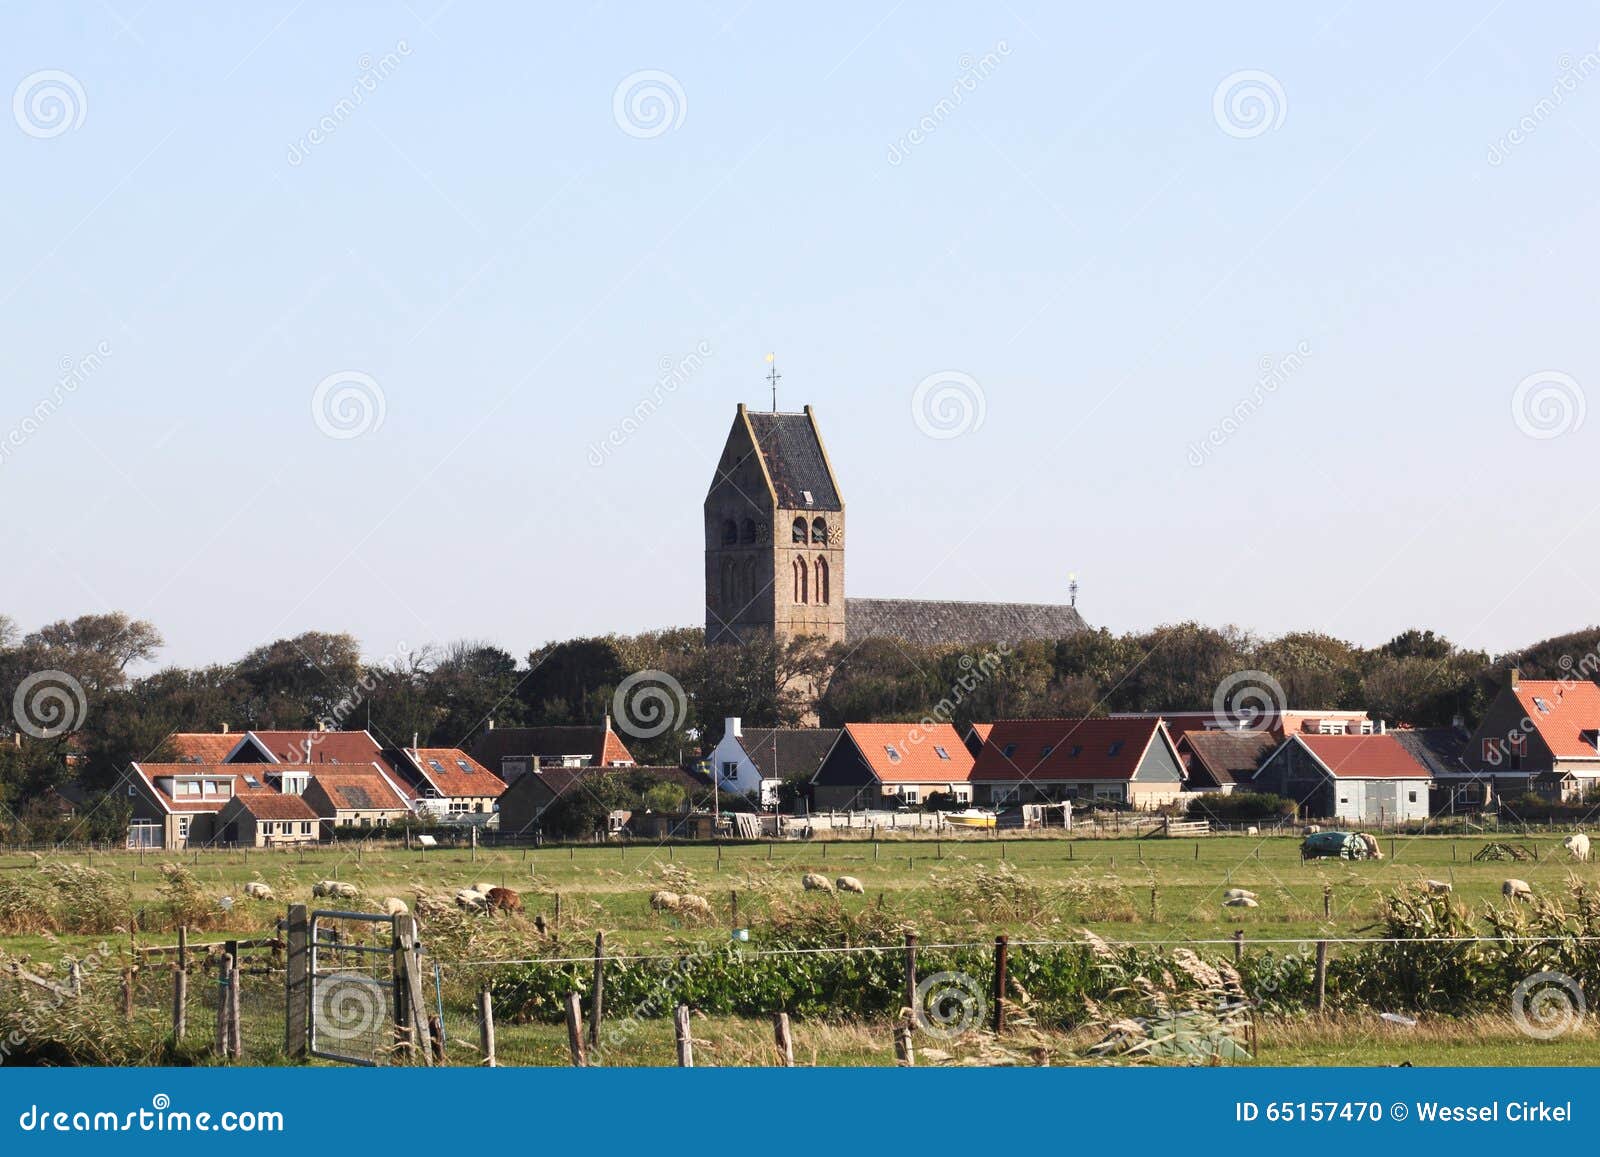 dutch reformed church of hollum ameland, holland